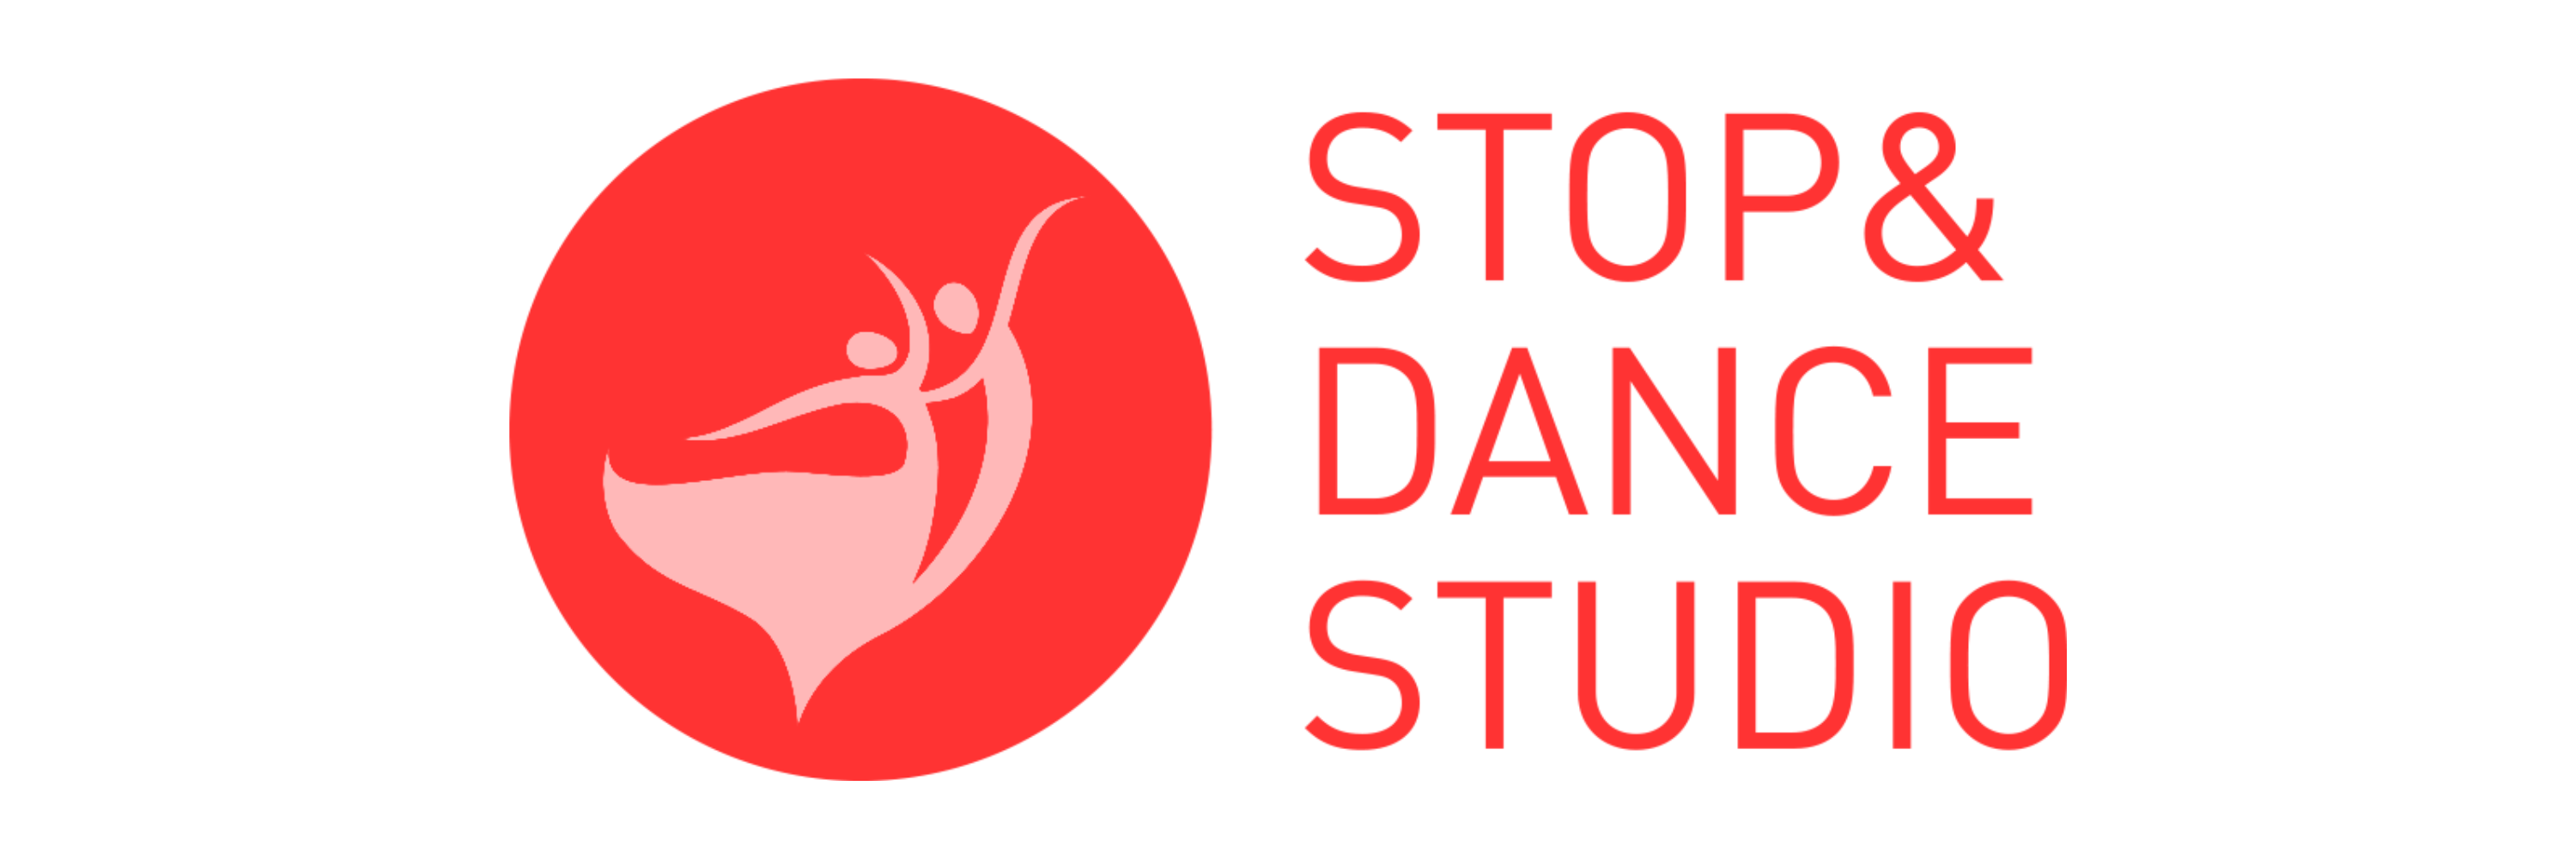 Stop & Dance